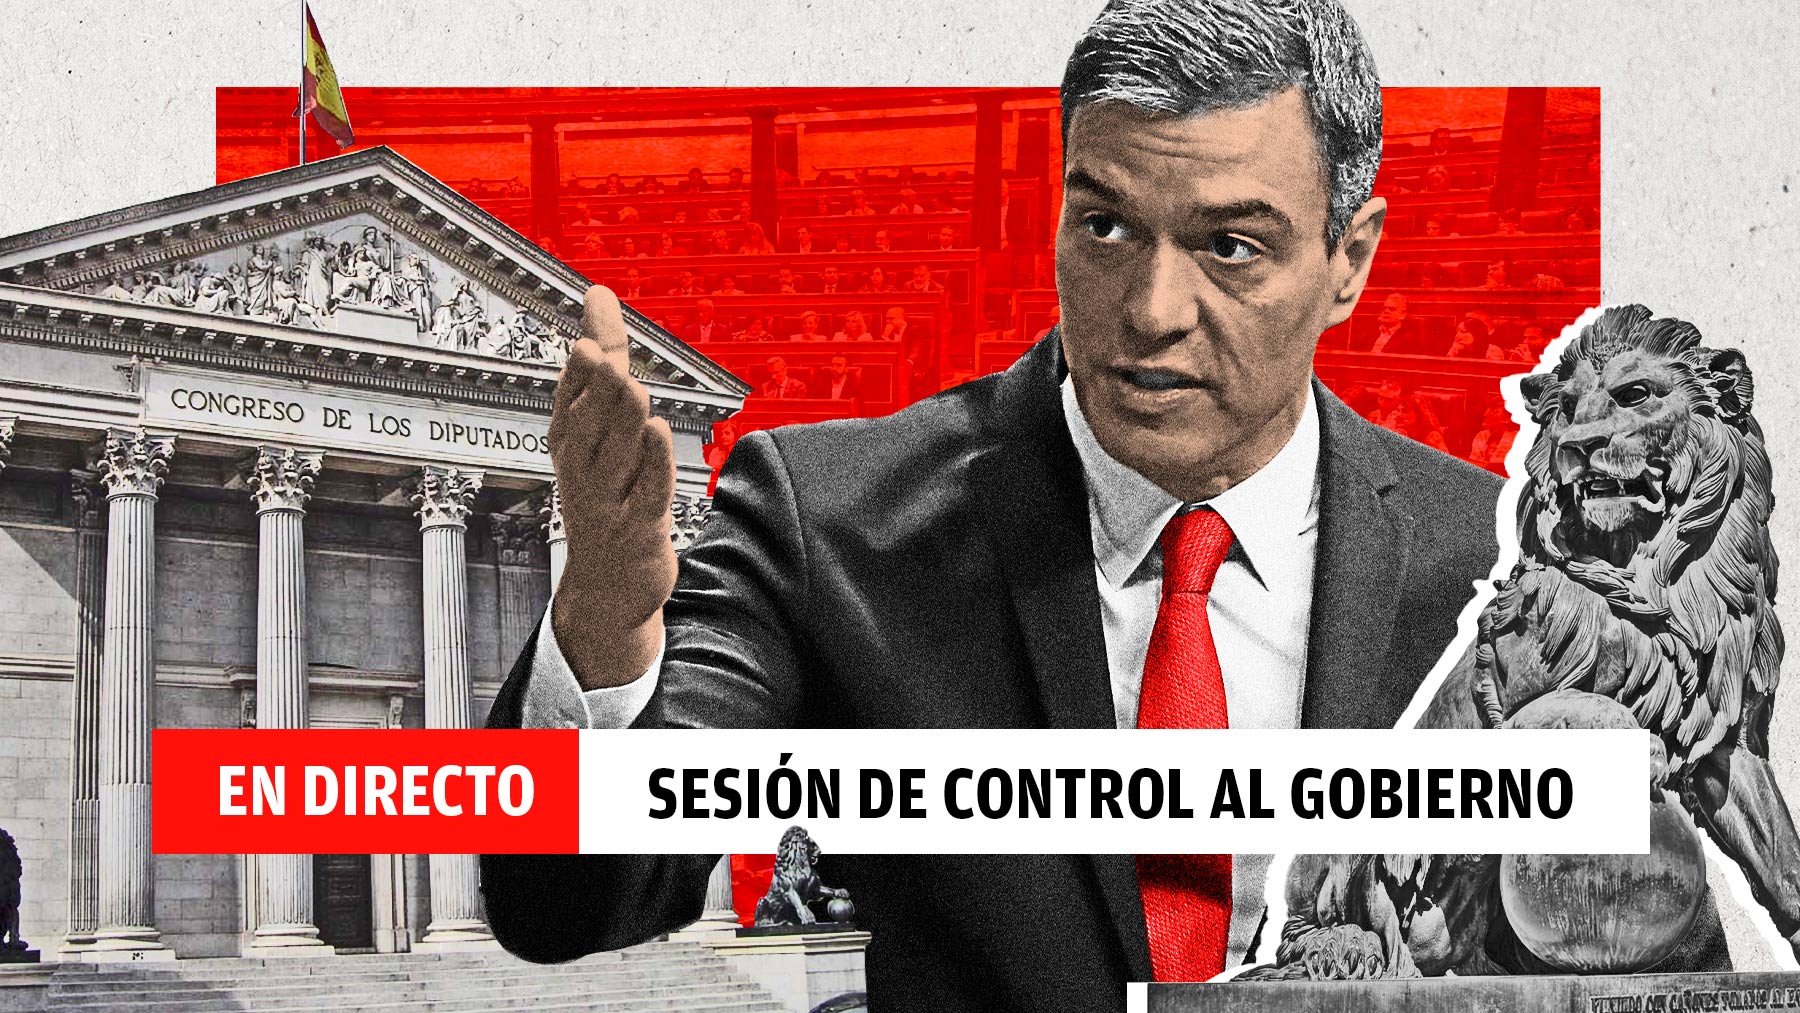 En directo, la sesión de control al Gobierno de Pedro Sánchez.